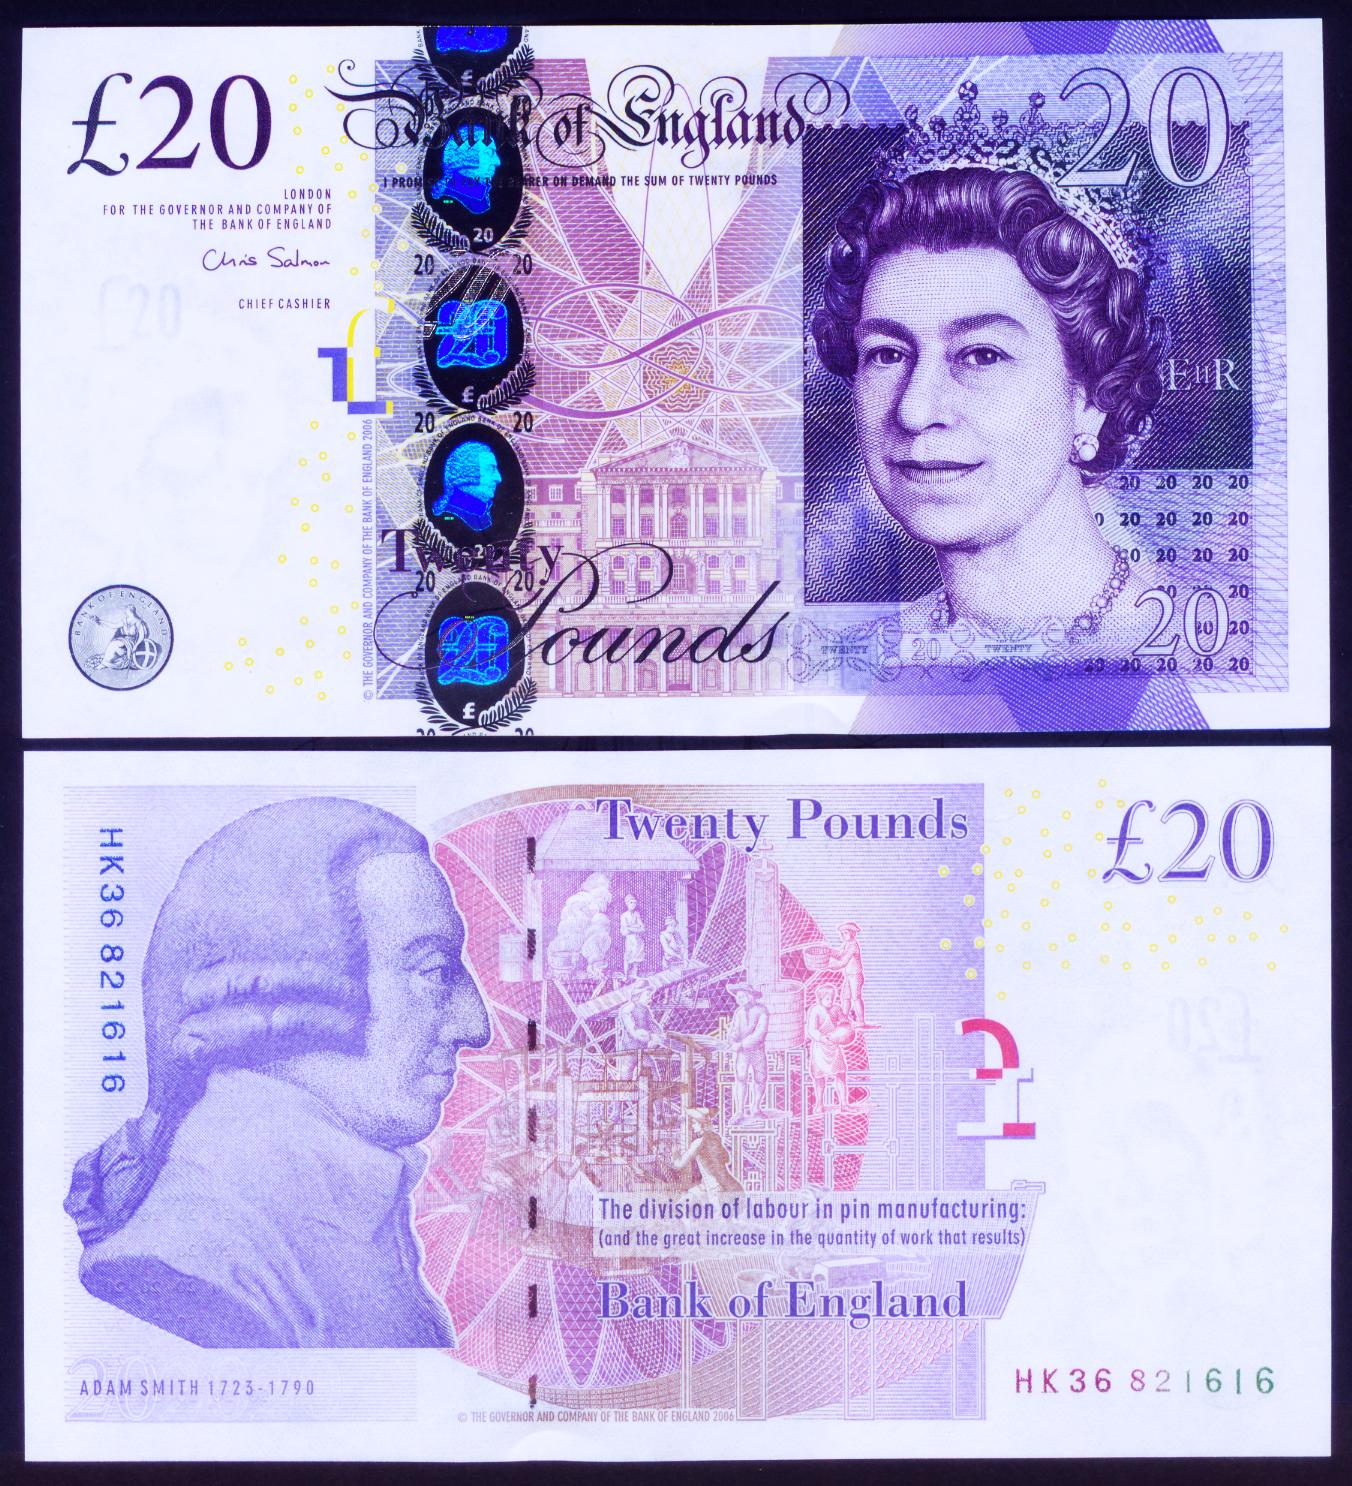 英国英格兰银行f序列 (亚当.斯密) 20英镑 全新unc品(大图展示)